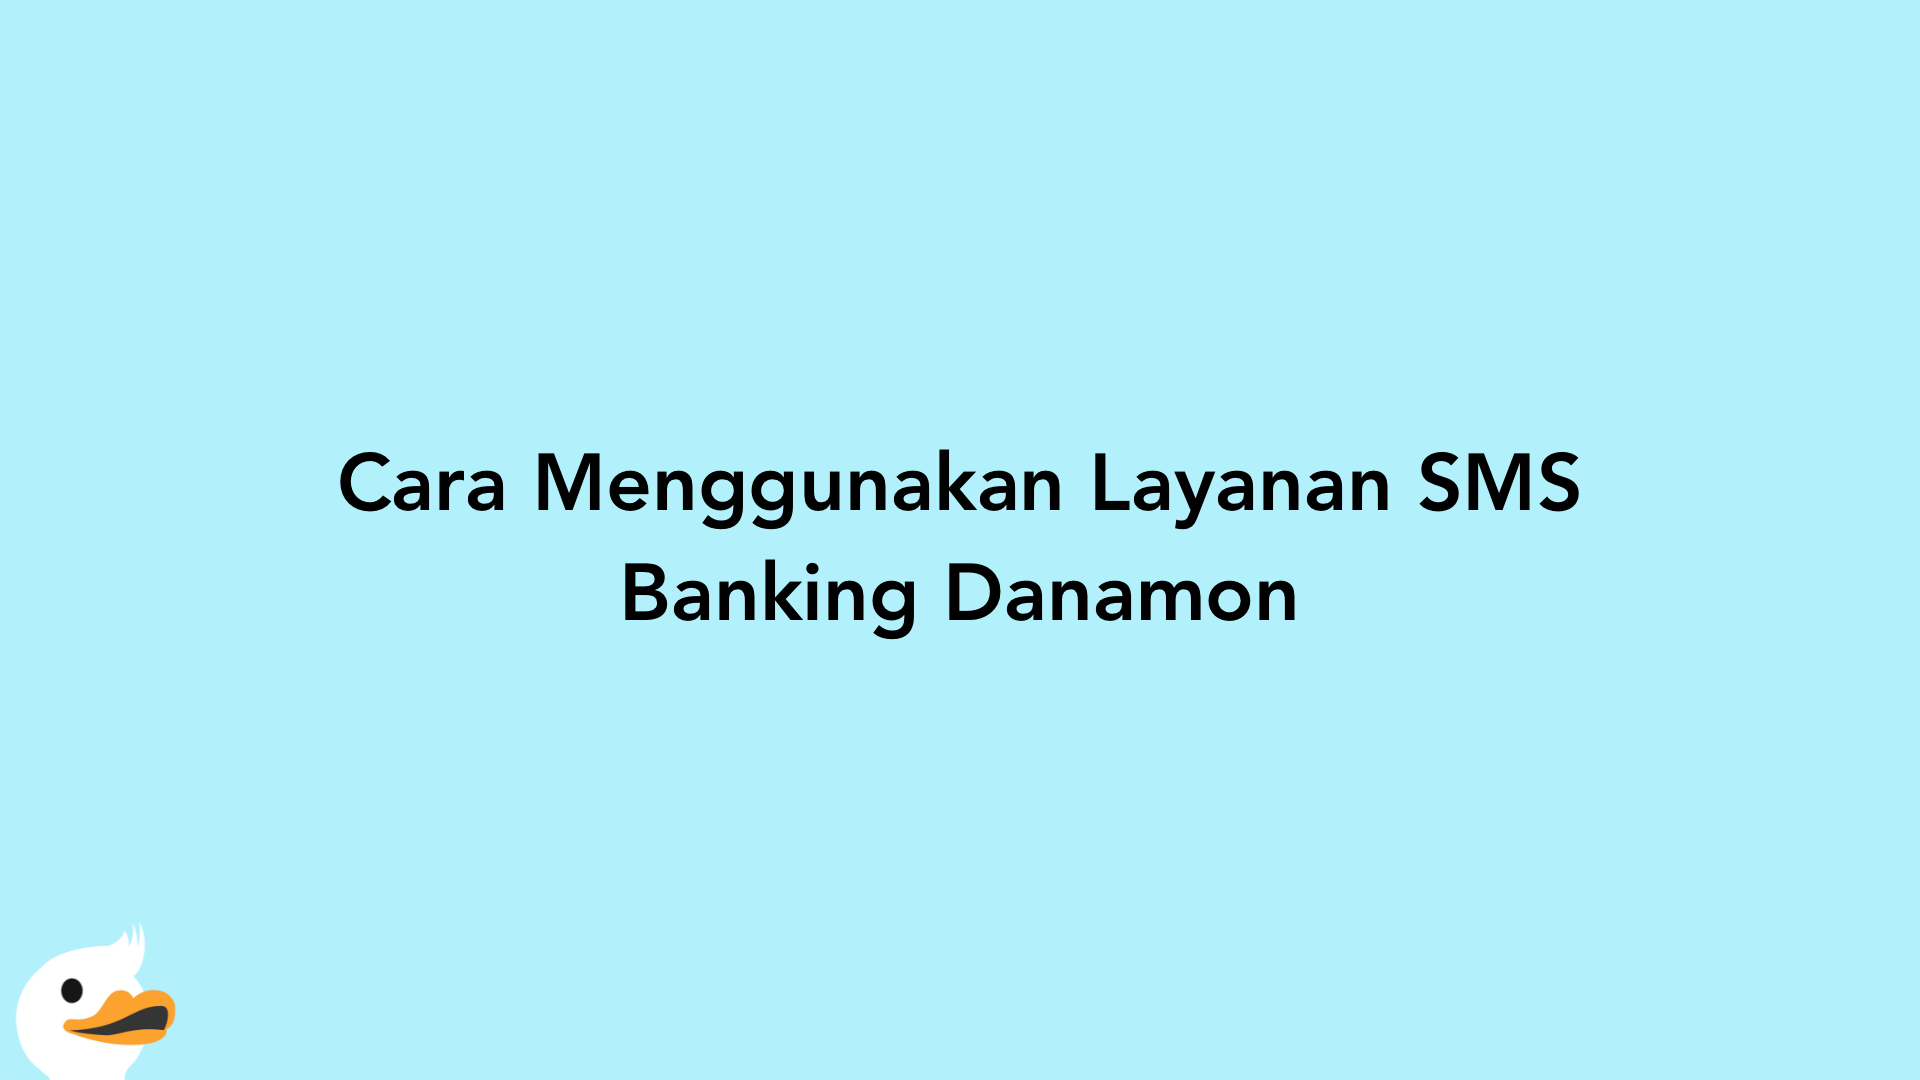 Cara Menggunakan Layanan SMS Banking Danamon